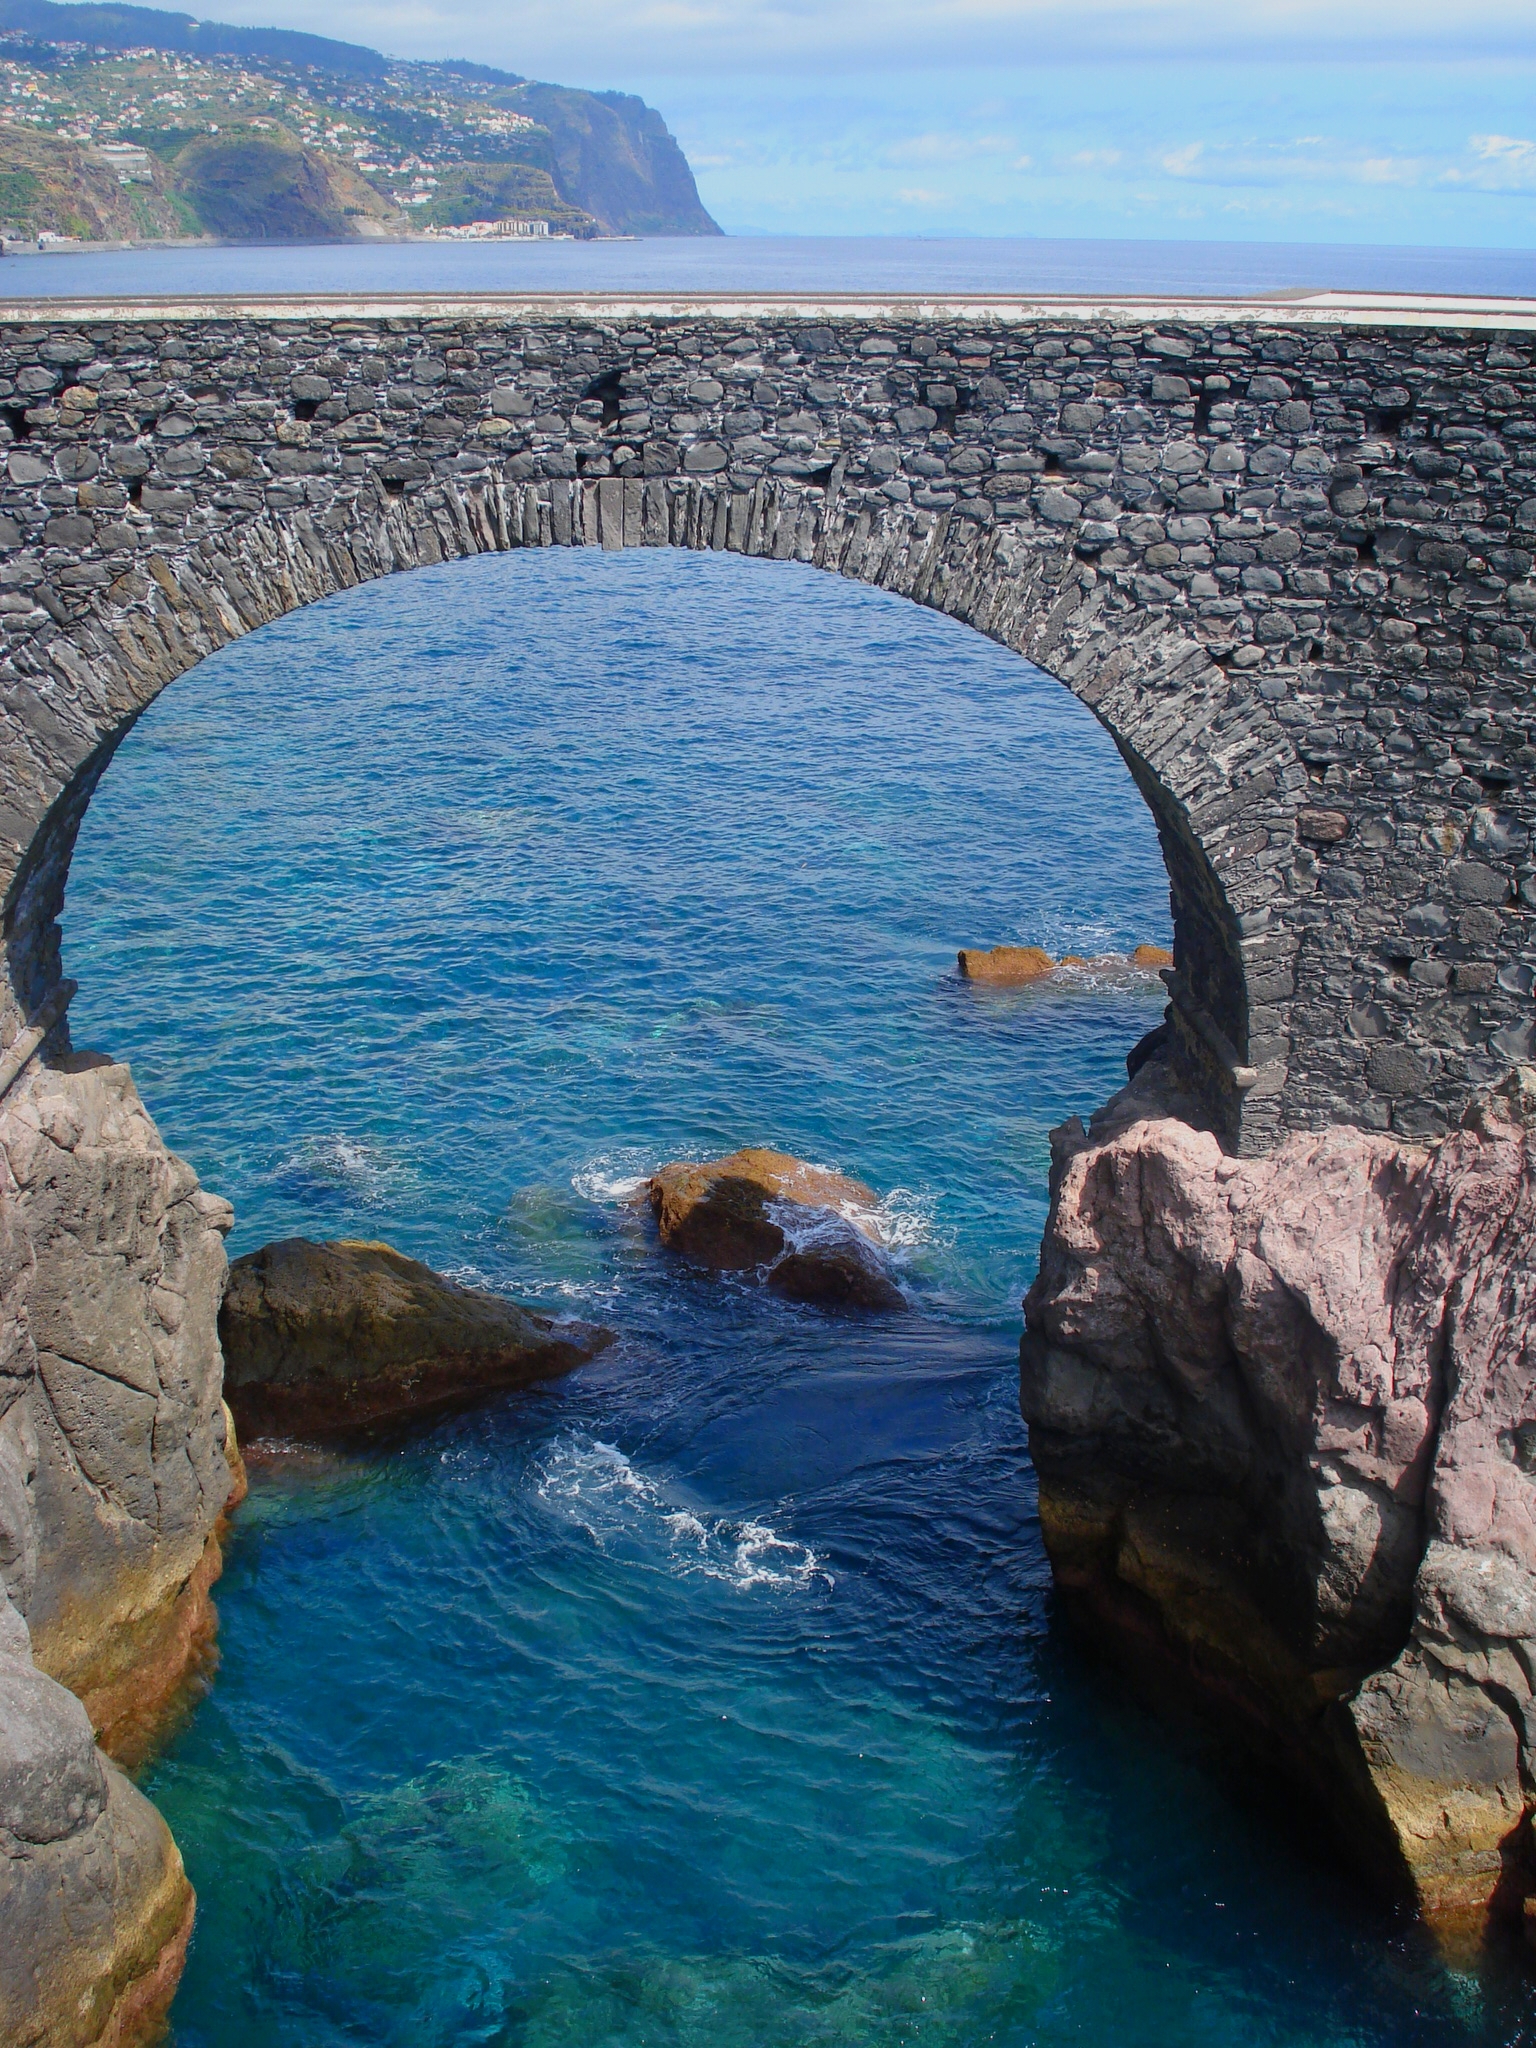 Puerta del mar